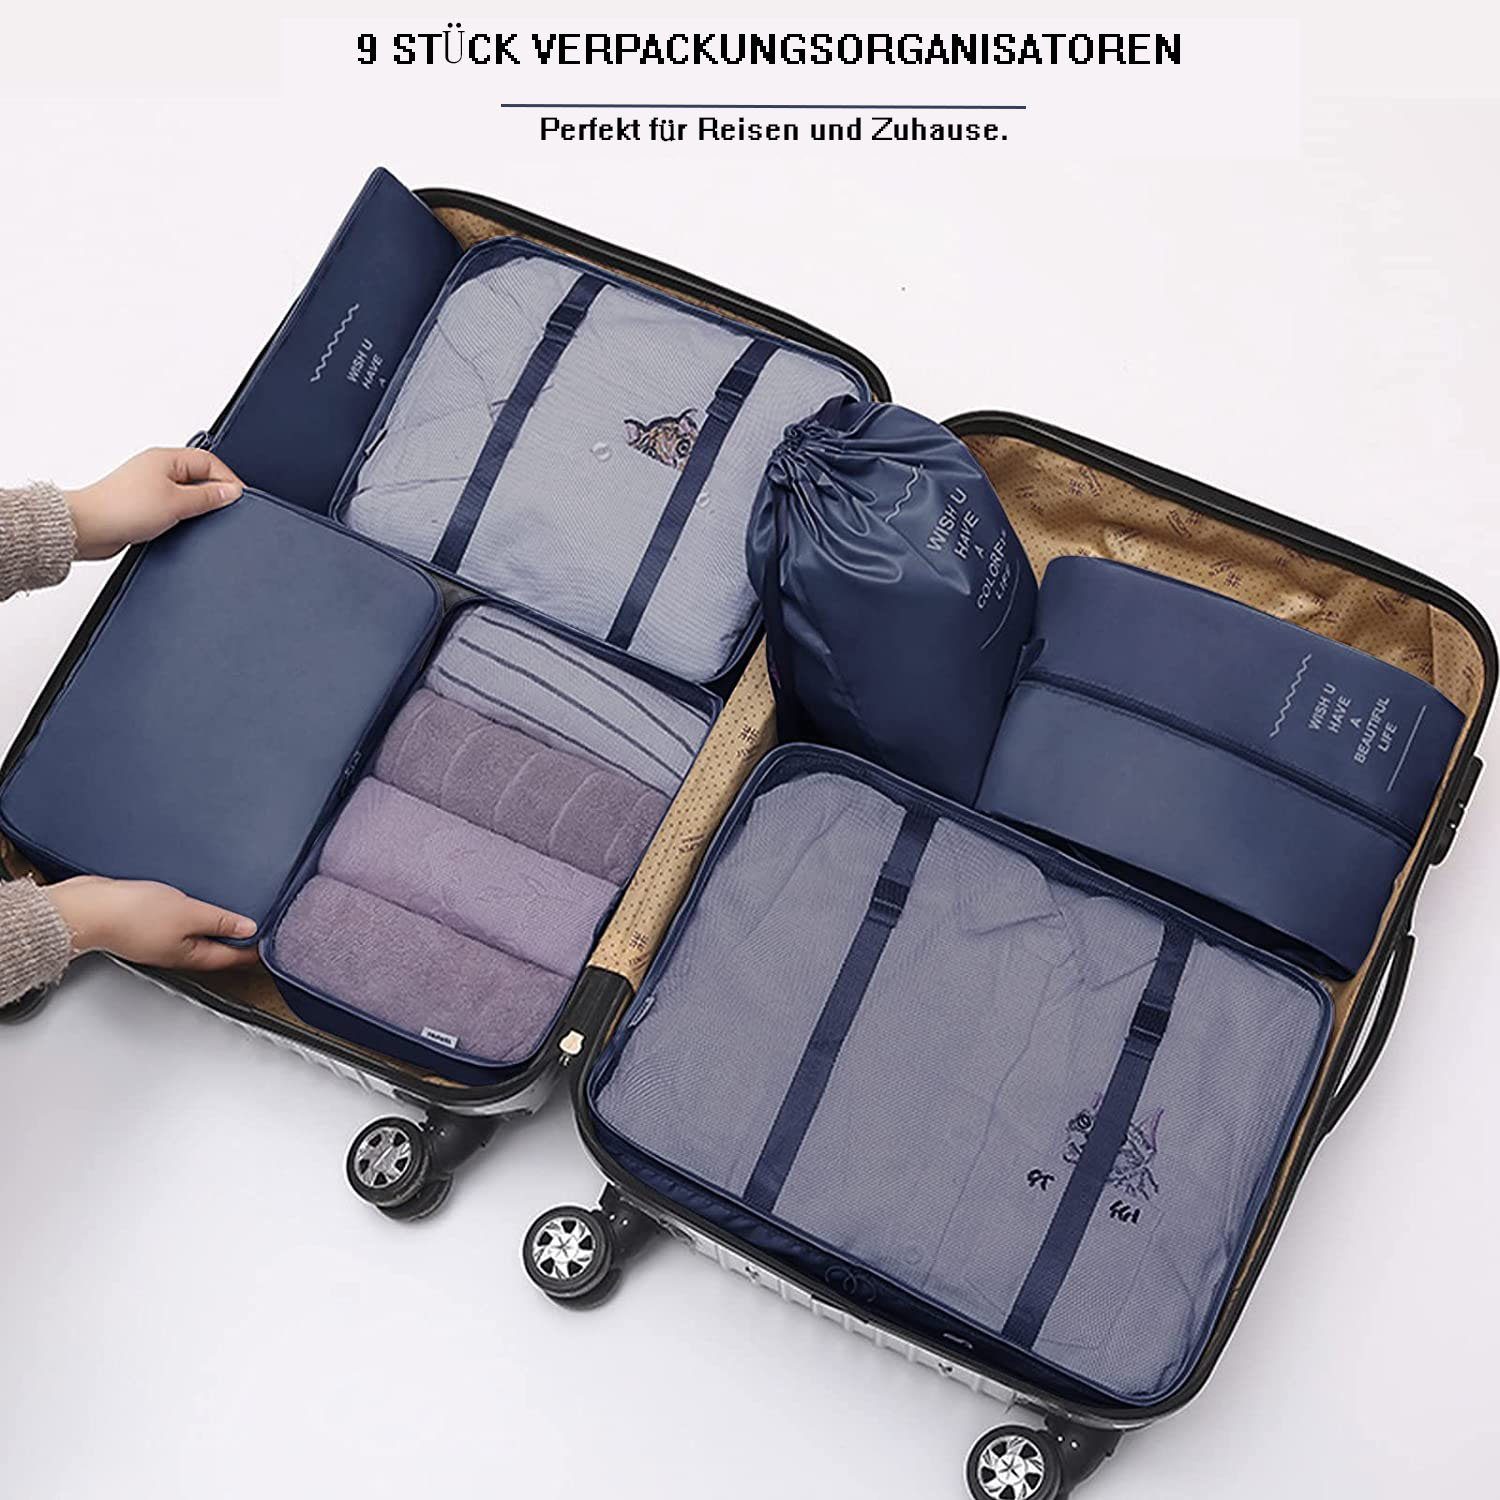 zggzerg Kofferorganizer Packing für blau Reisezubehör mit for Schuhtaschen Cubes Suitcase,Organizer